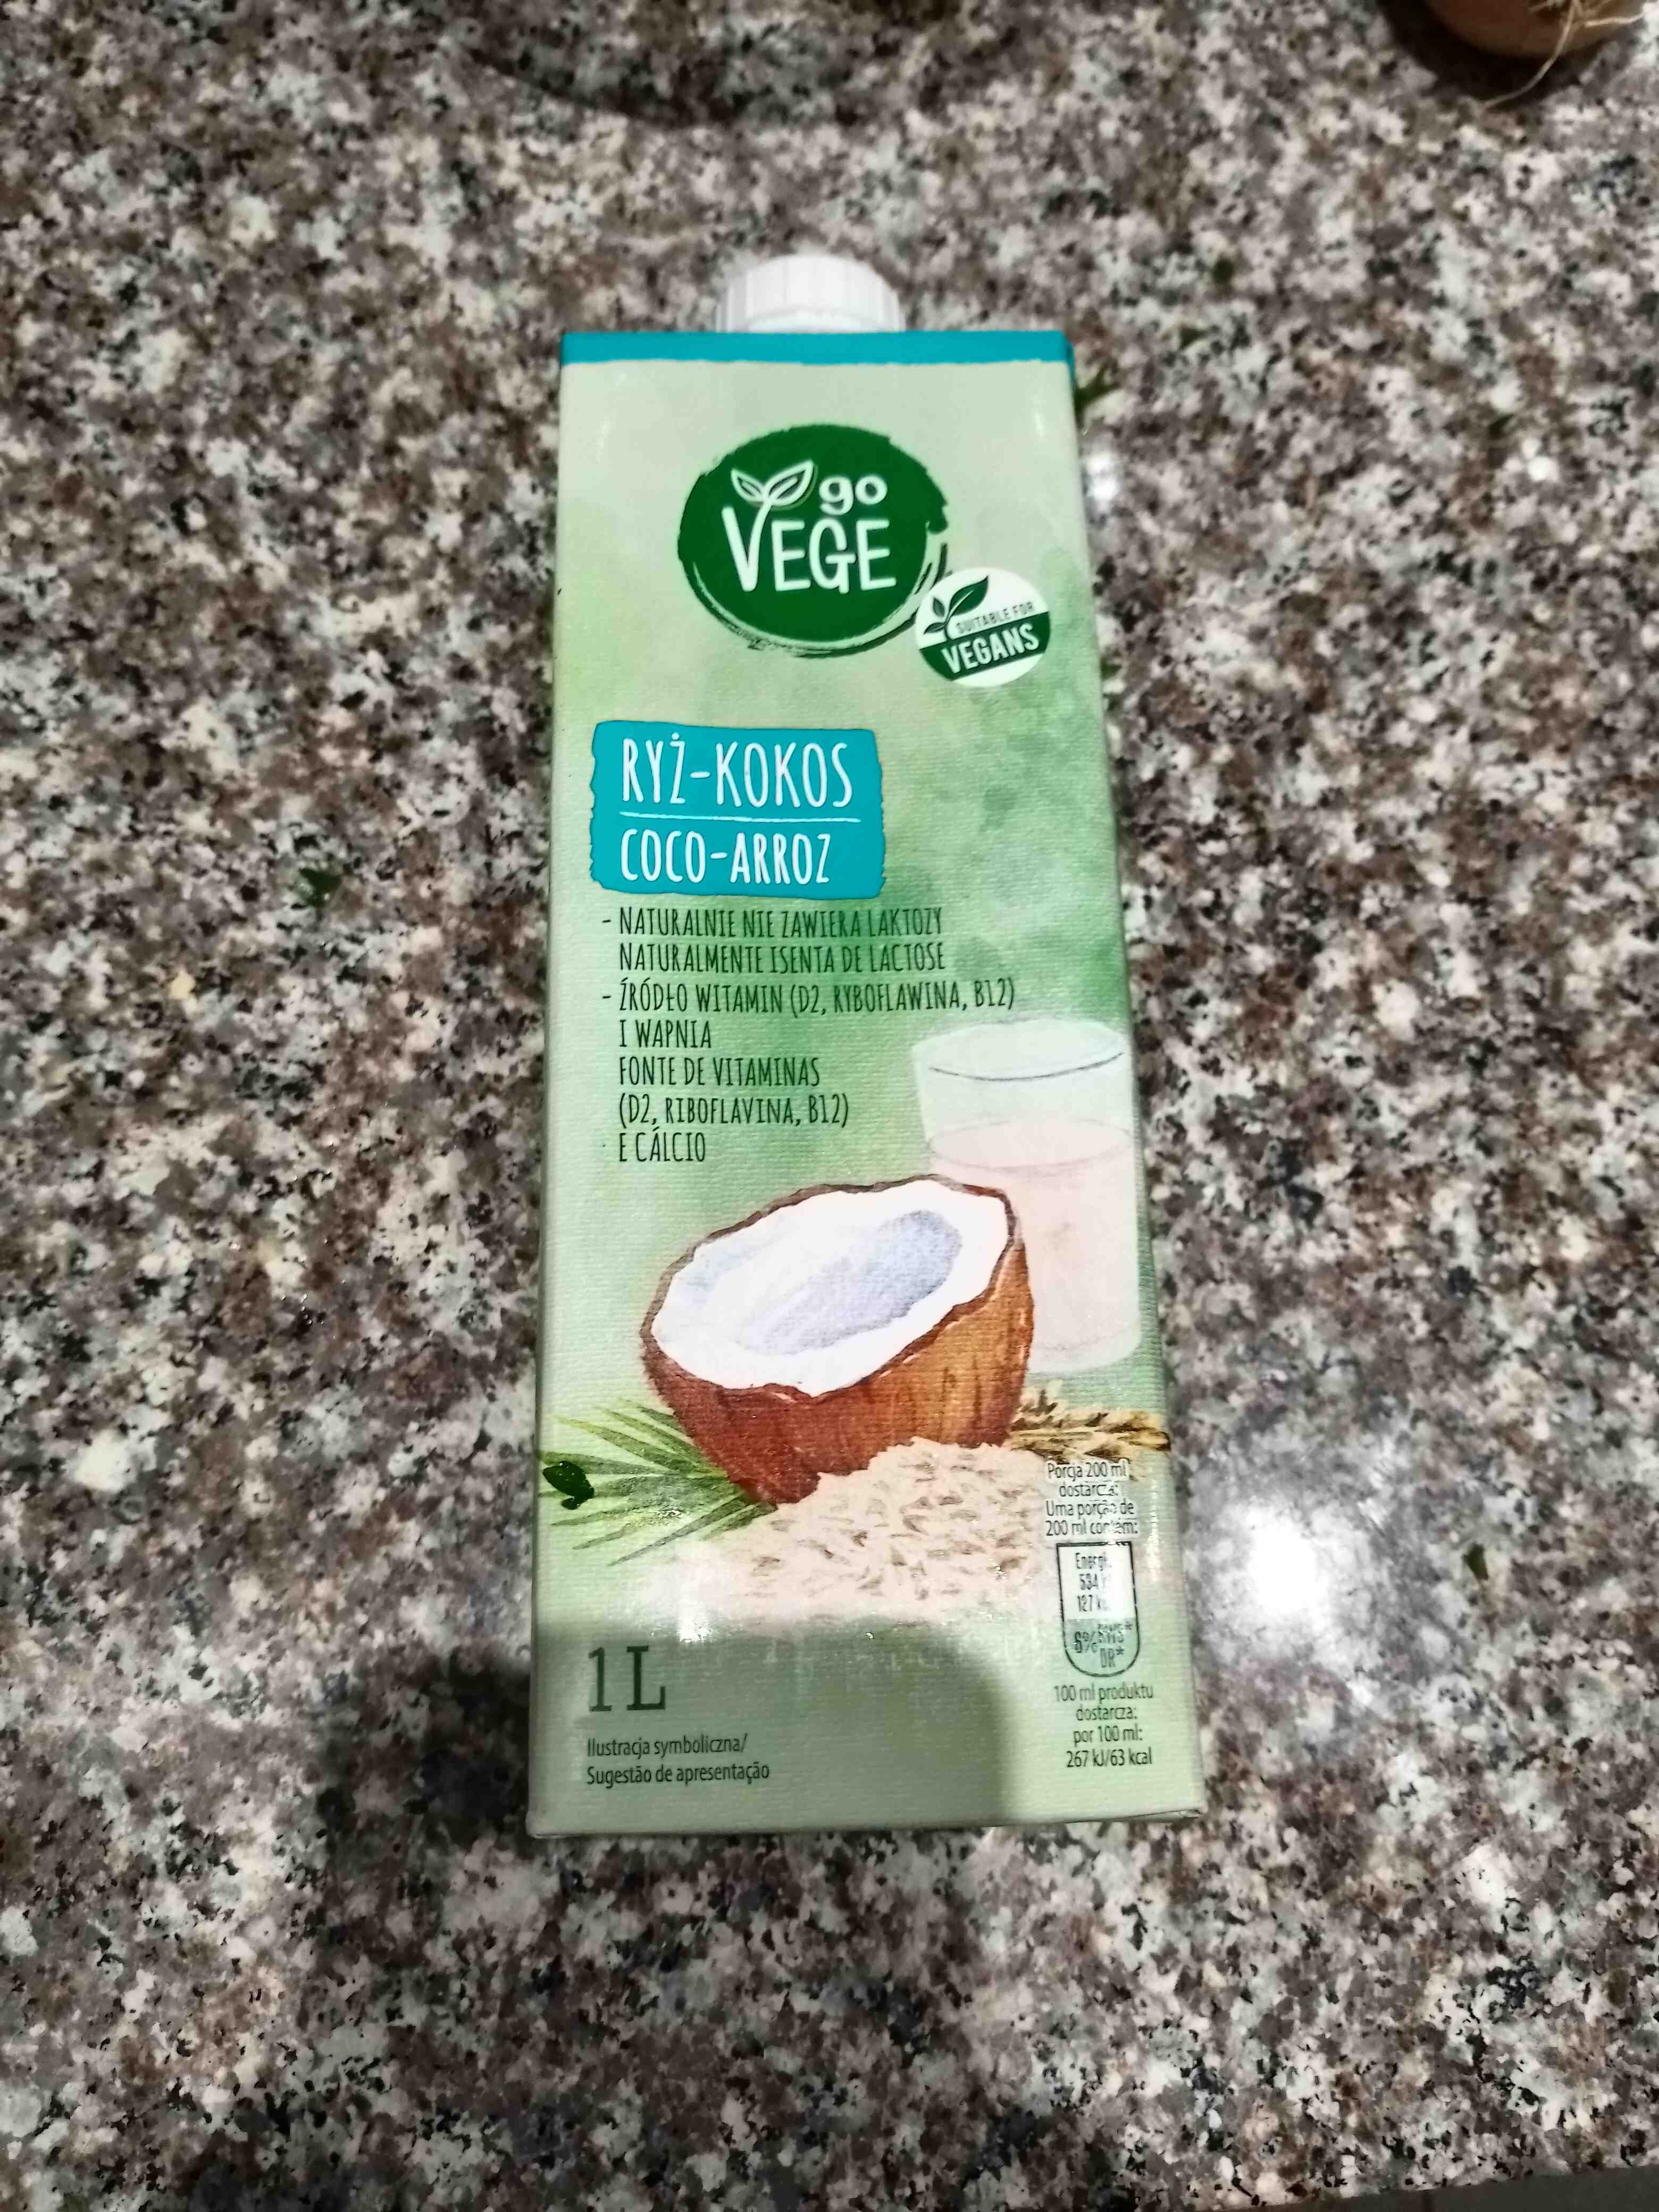 Coco-arroz - Product - en